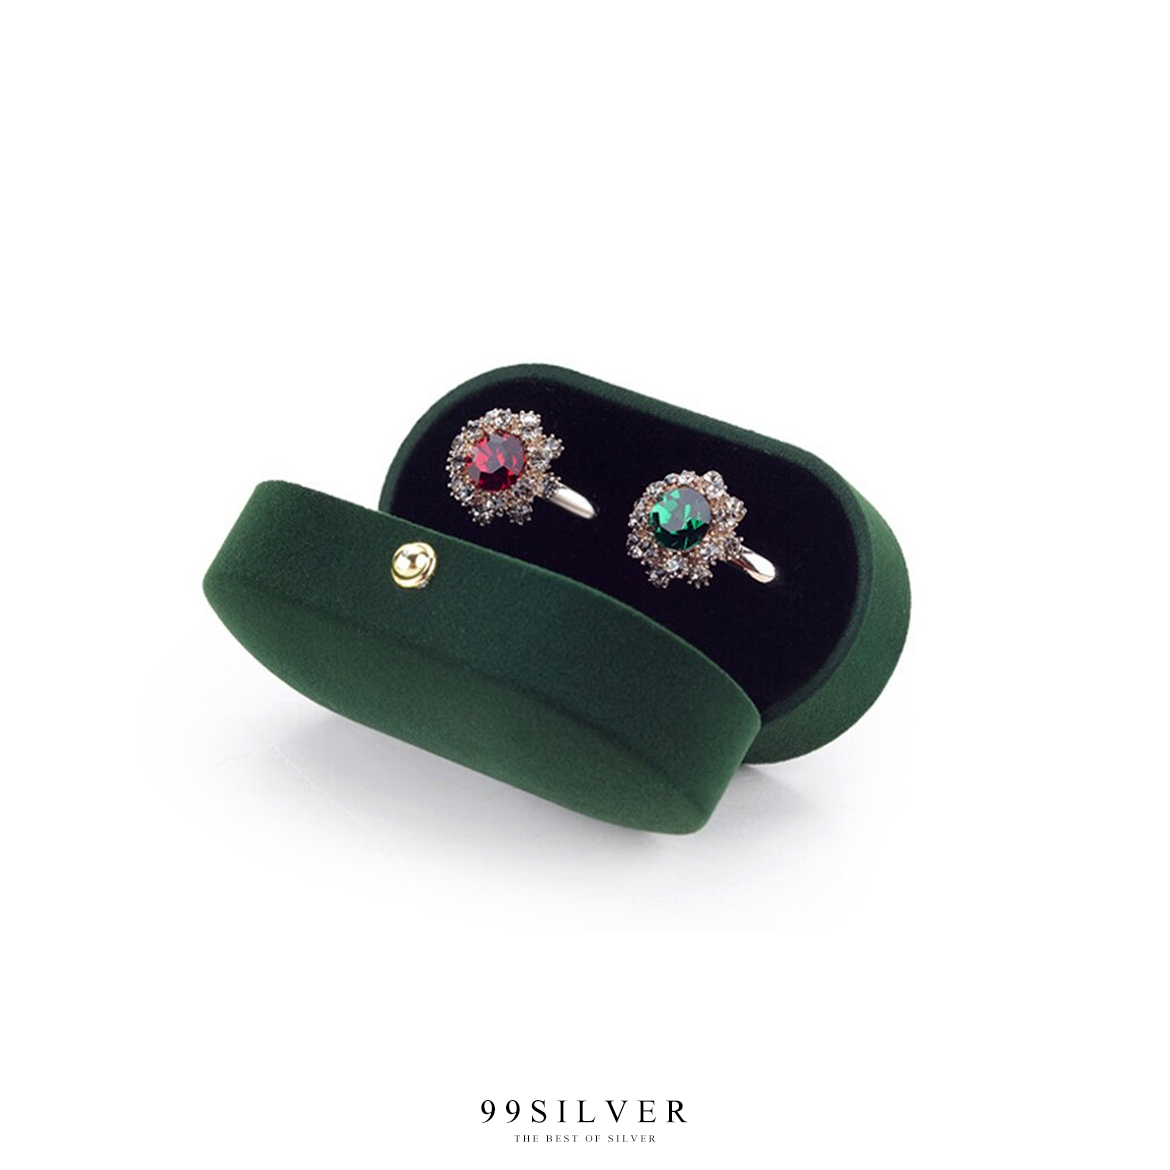 กล่องใส่แหวนกำมะหยี่สีเขียวทรงโค้งยาว ฝาแข็ง ใส่แหวนได้ 2 วงเรียบหรูคลาสสิค